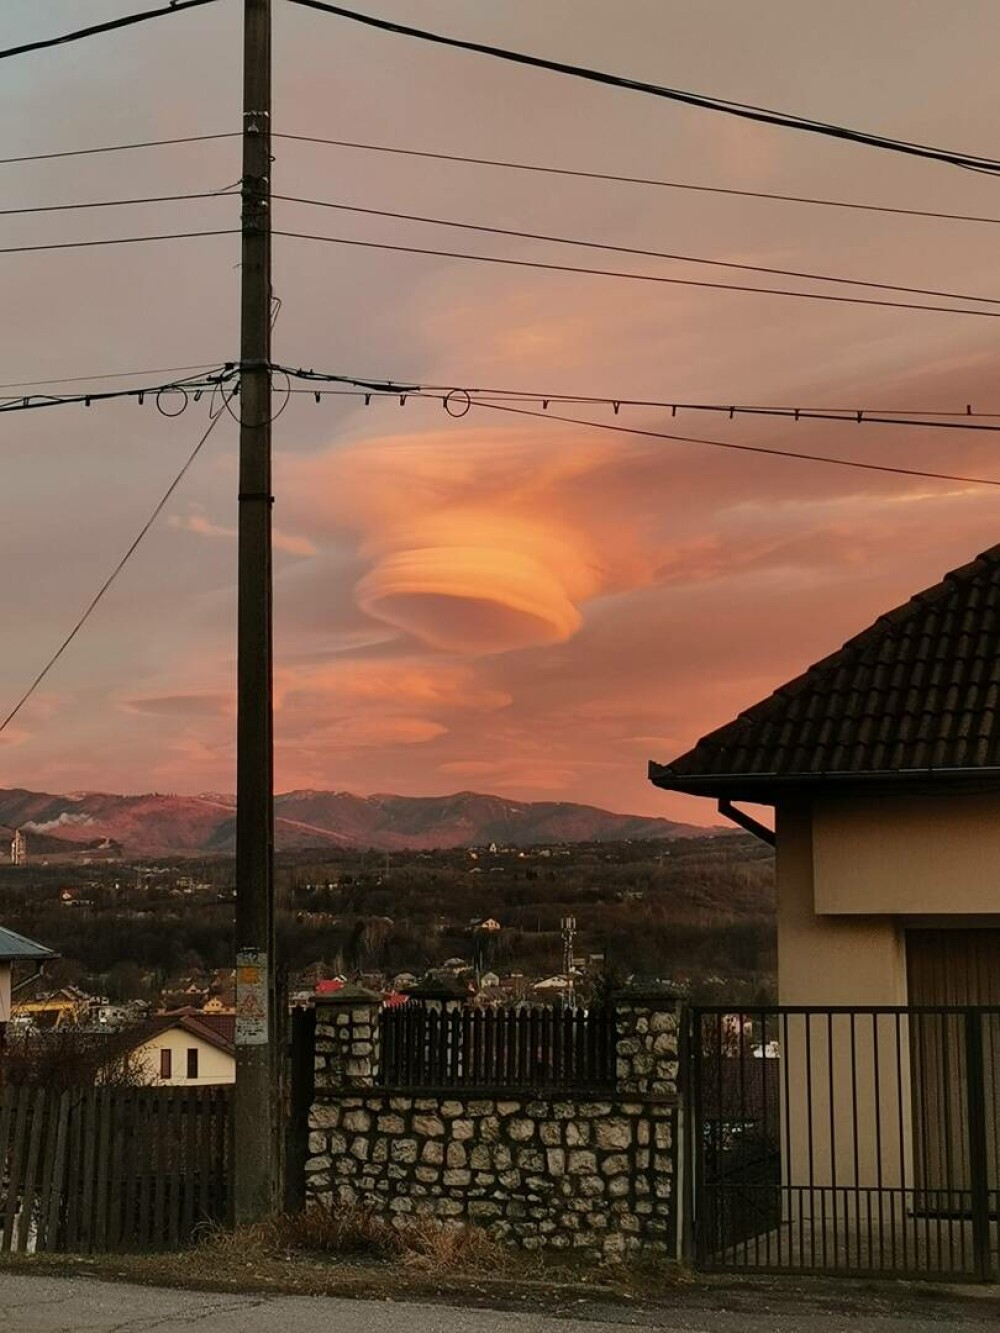 Norul OZN care i-a înspăimântat pe locuitorii din Câmpulung Muscel. Imaginea stranie a creat isterie GALERIE FOTO & VIDEO - Imaginea 1